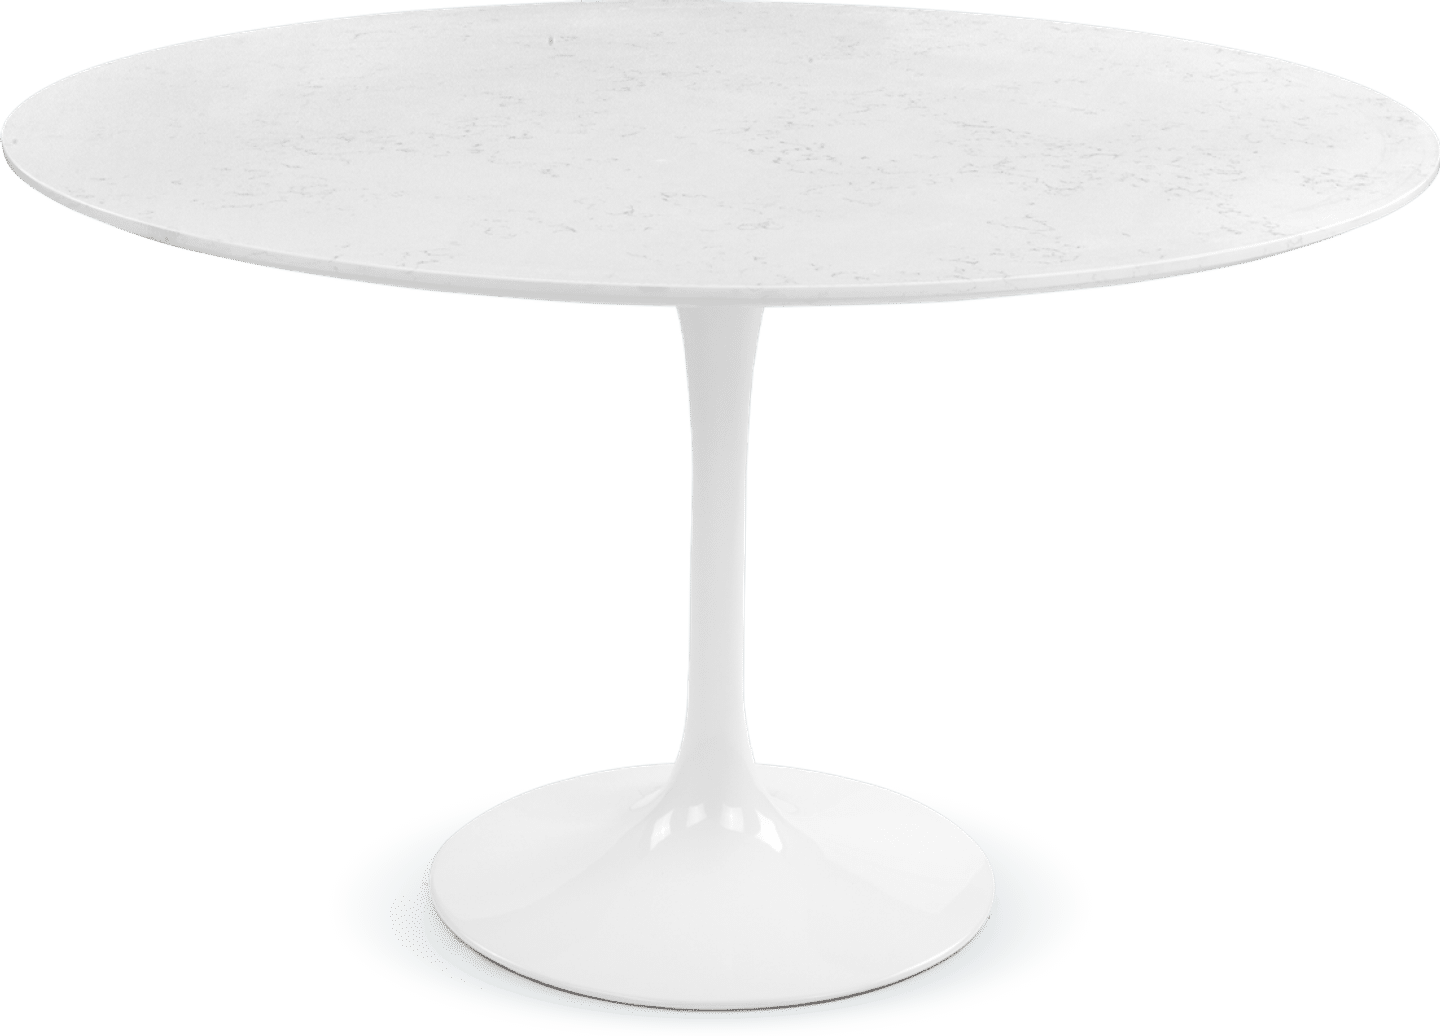 Tulip Round Dining Table - White Marble White Quartz 120/120 CM image.